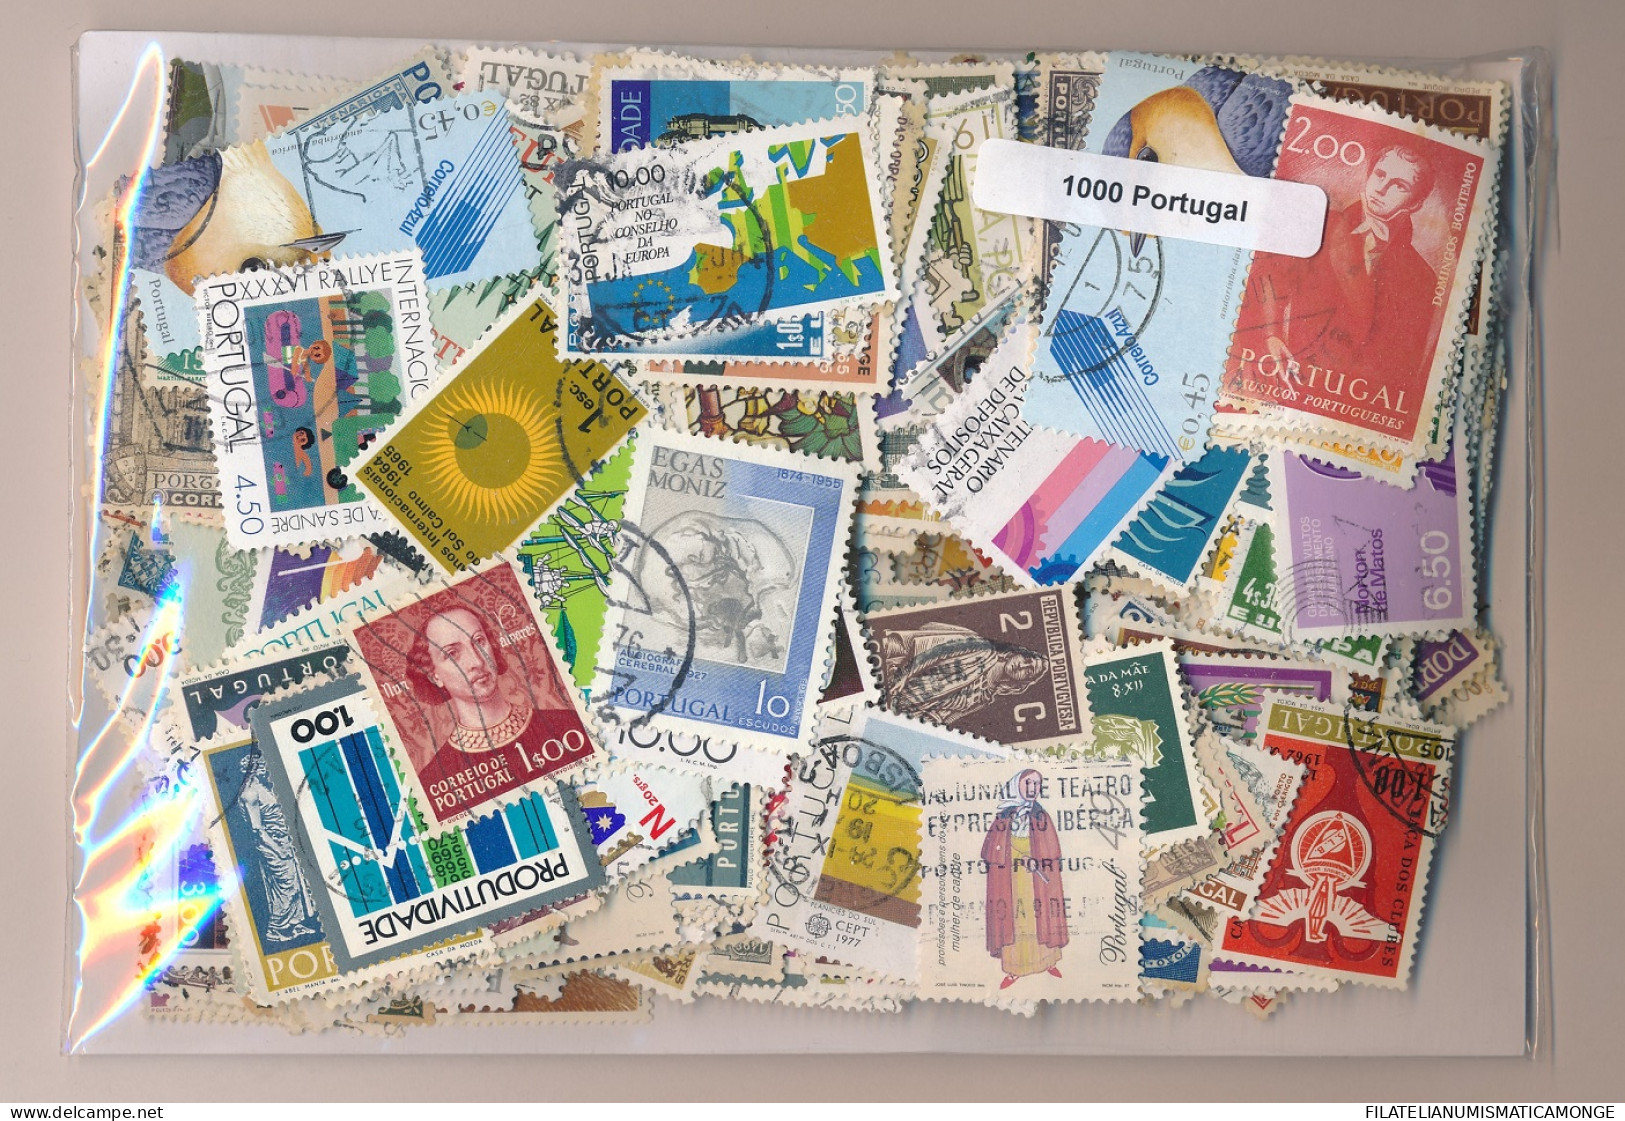  Offer - Lot Stamps - Paqueteria  Portugal 1000 Sellos Diferentes           - Kilowaar (min. 1000 Zegels)